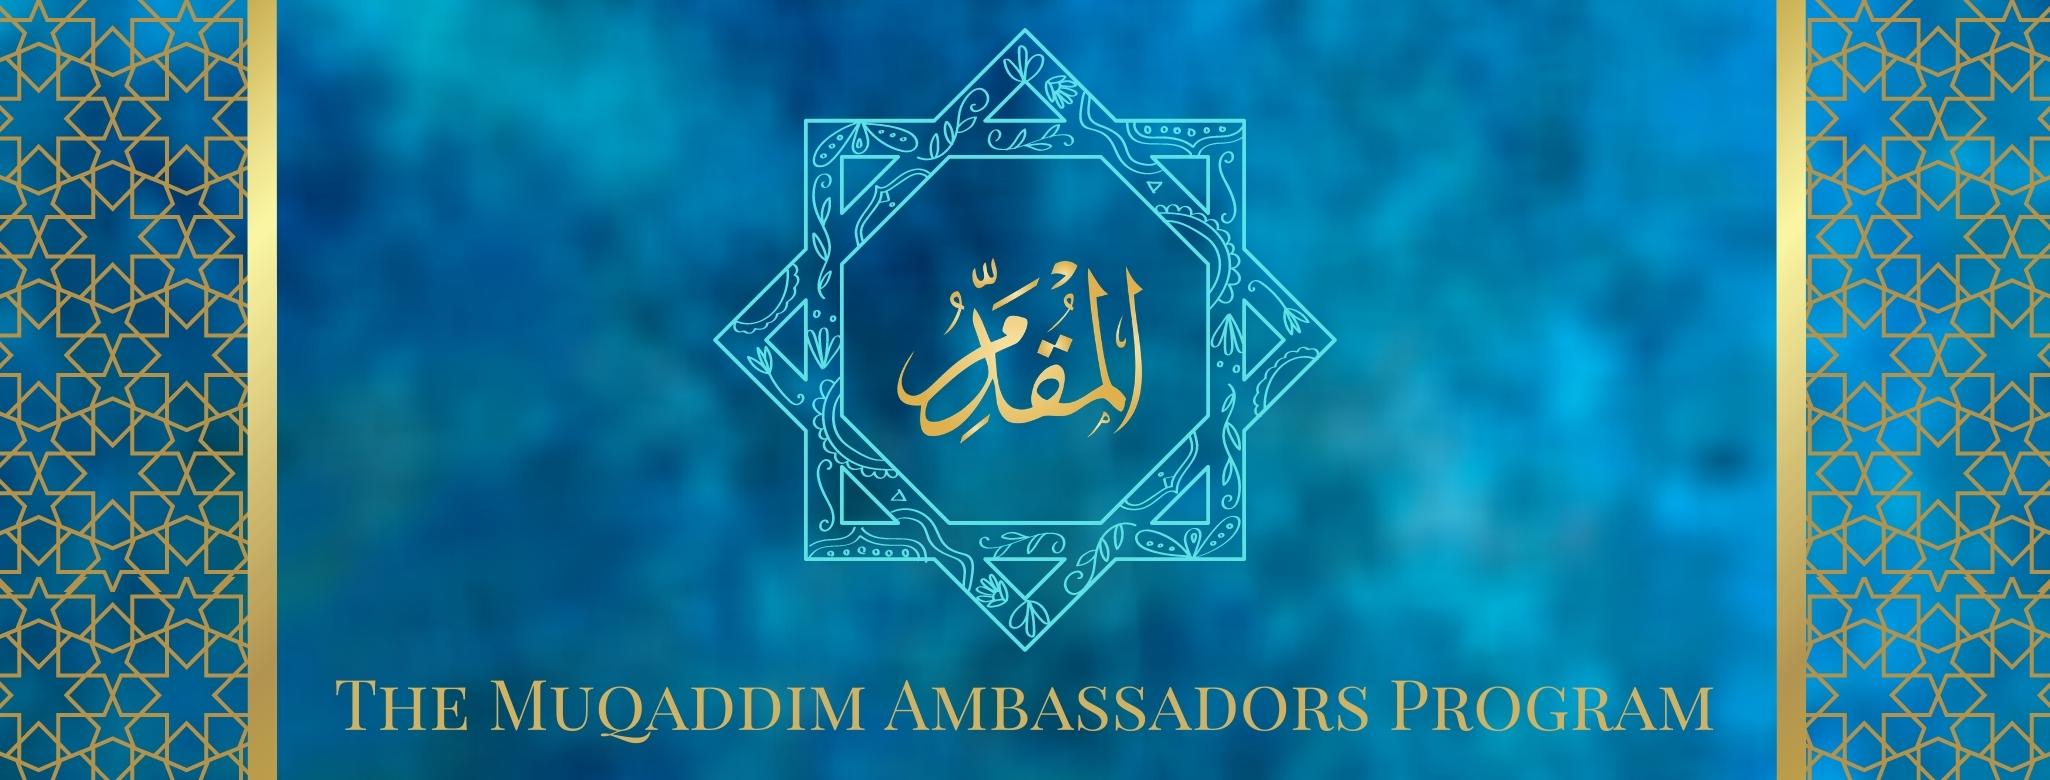 The Muqaddim Ambassadors Program